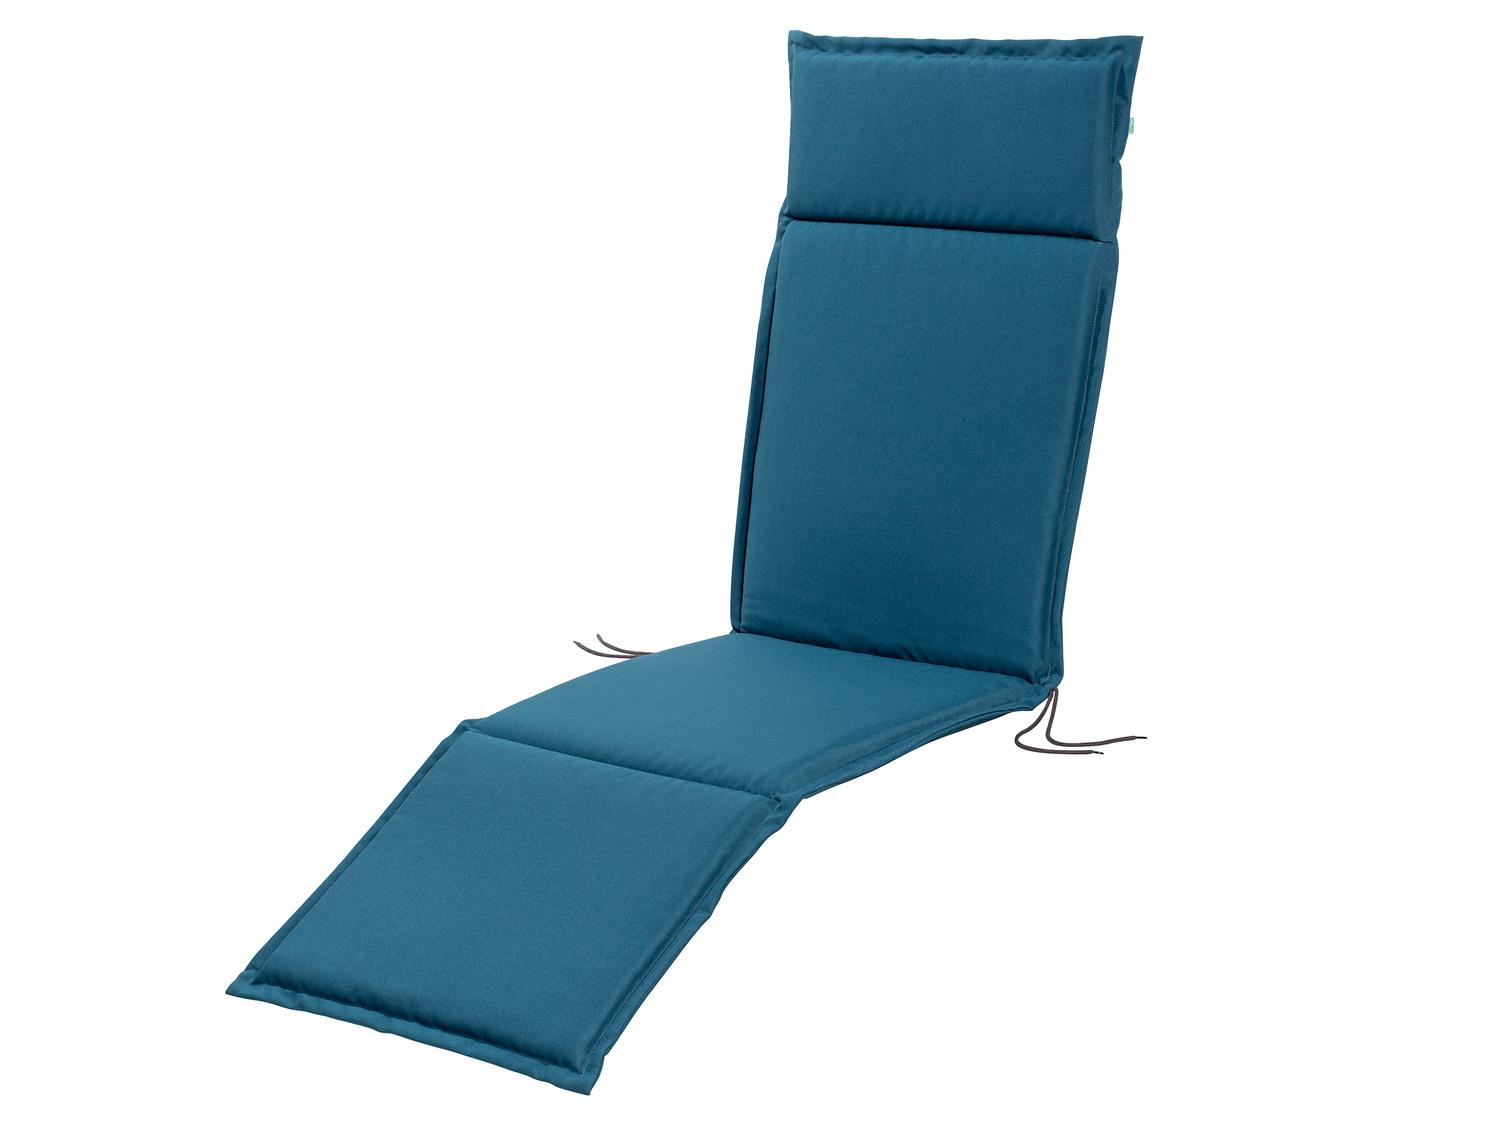 Poduszka na krzesło , cena 29,99 PLN 
- wymiary: 167 x 50 x 4 cm
- różne kolory
Opis ...